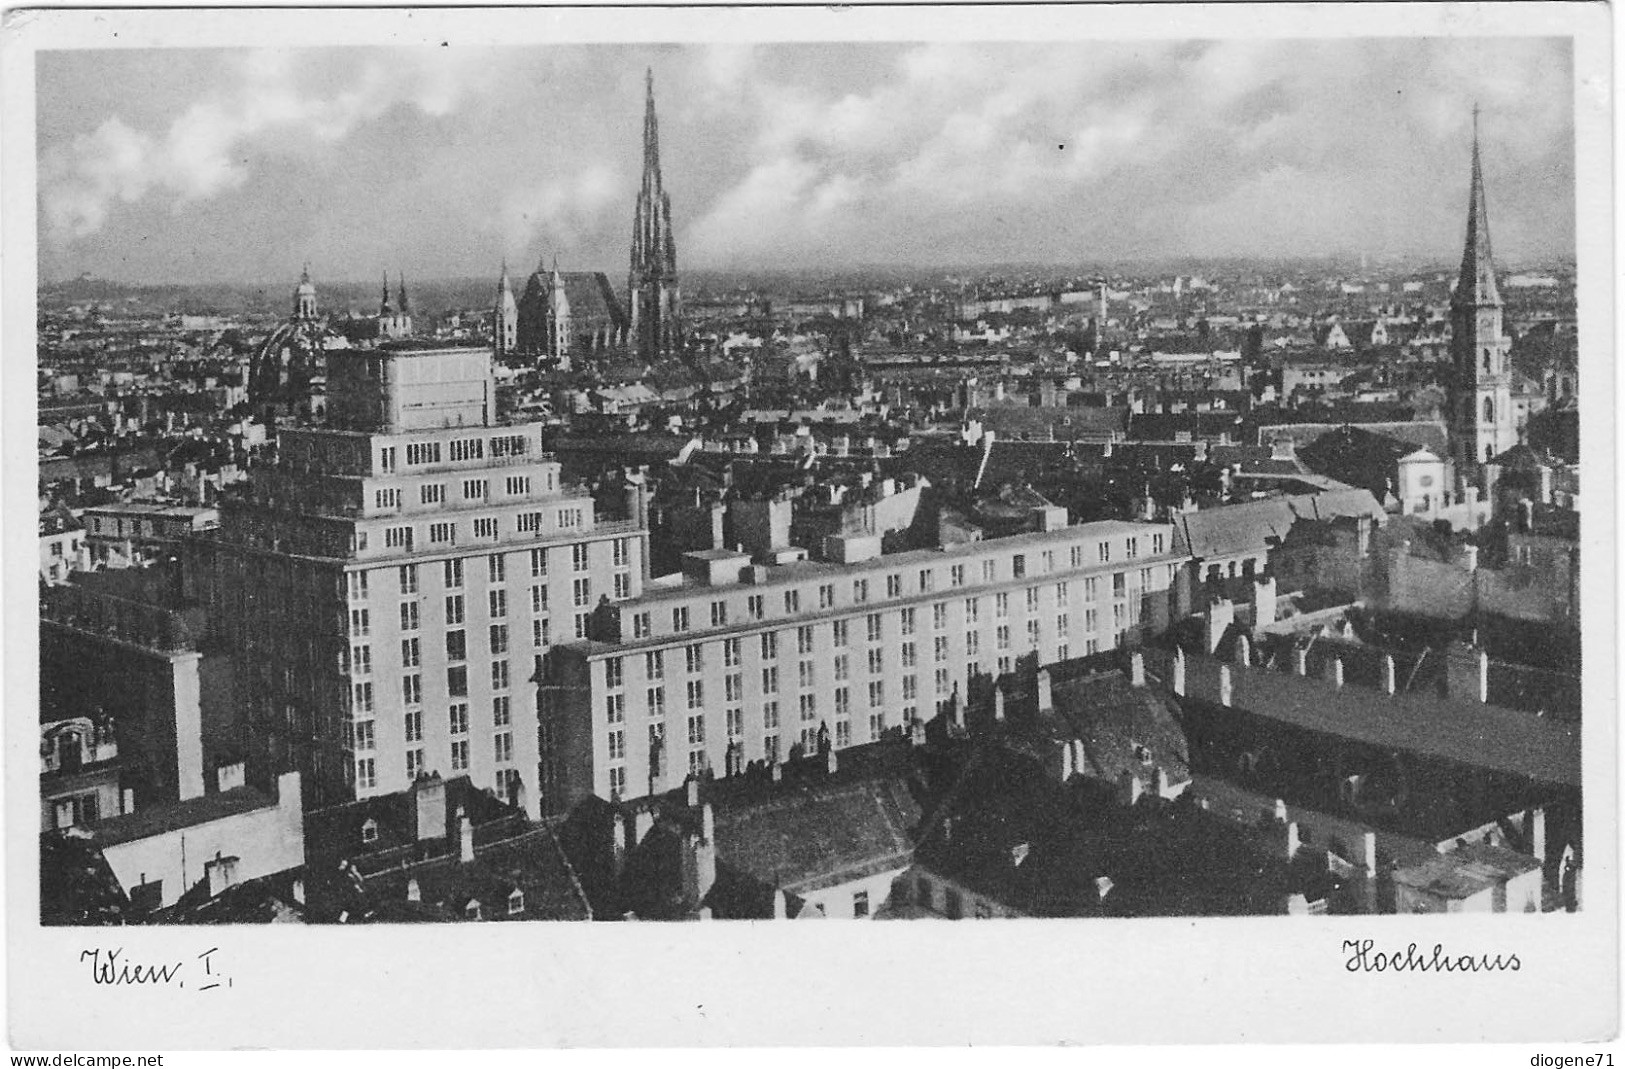 Wien I. Hochhaus 1941 - Wien Mitte